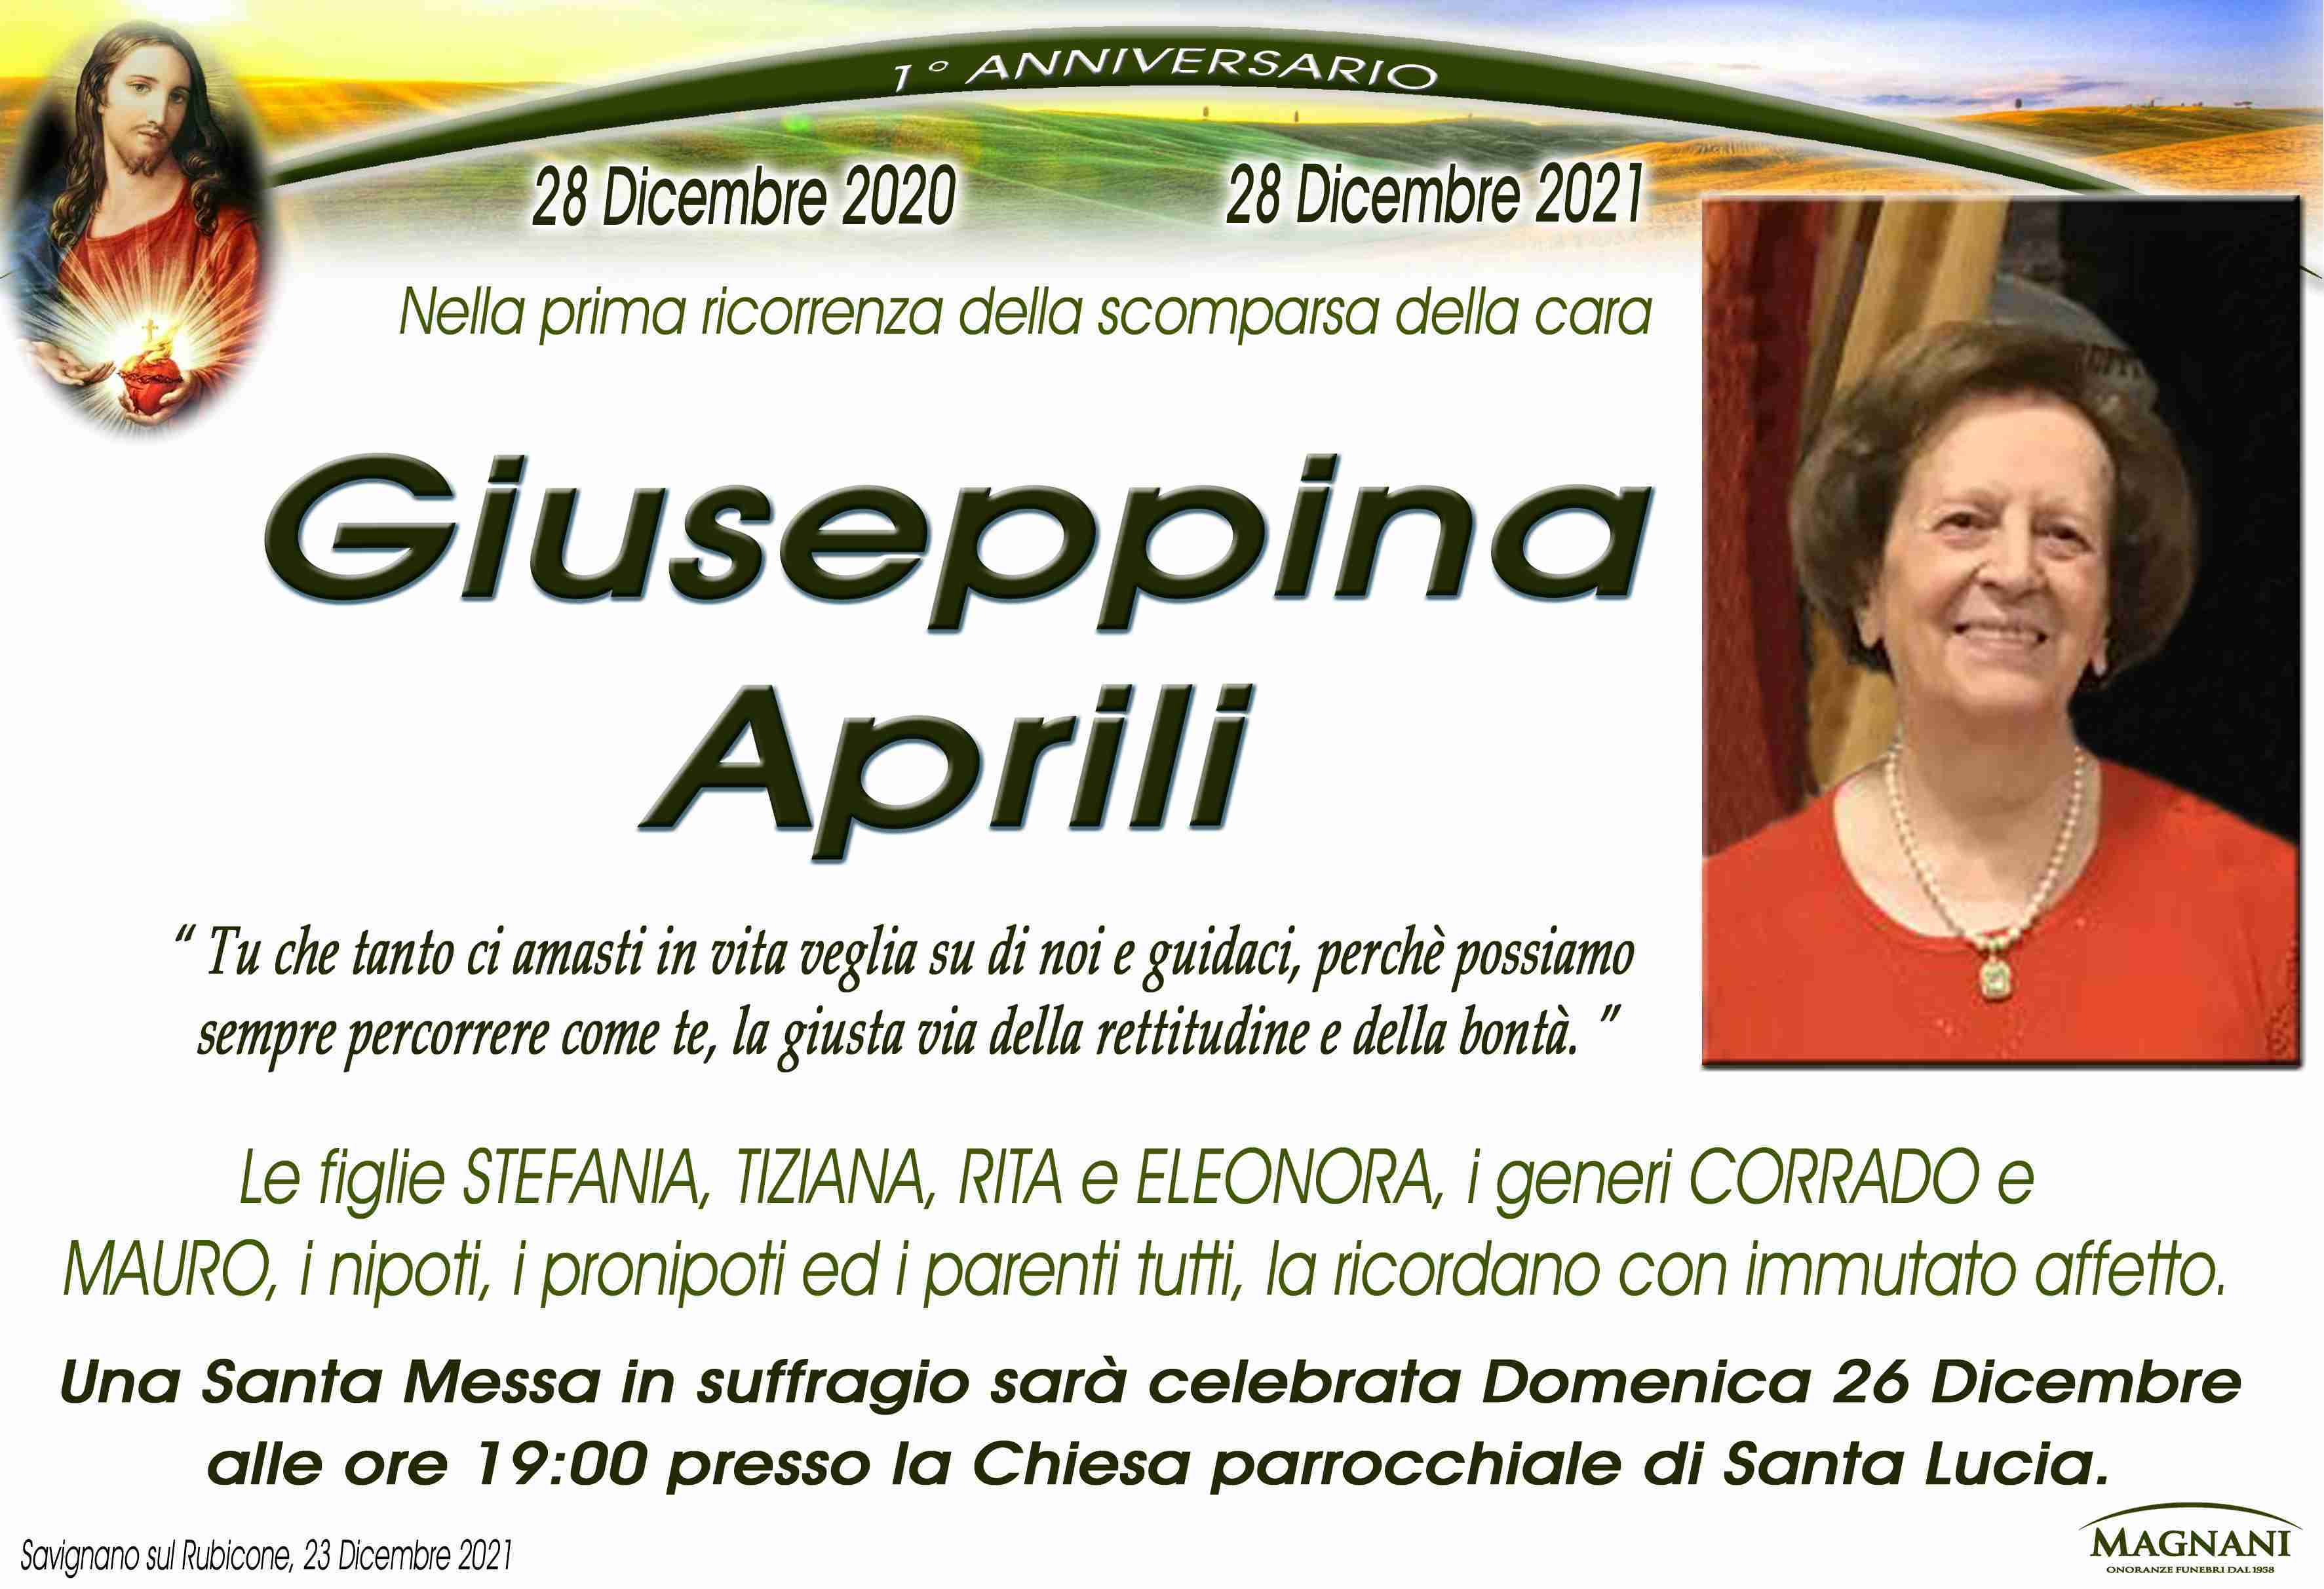 Giuseppina Aprili